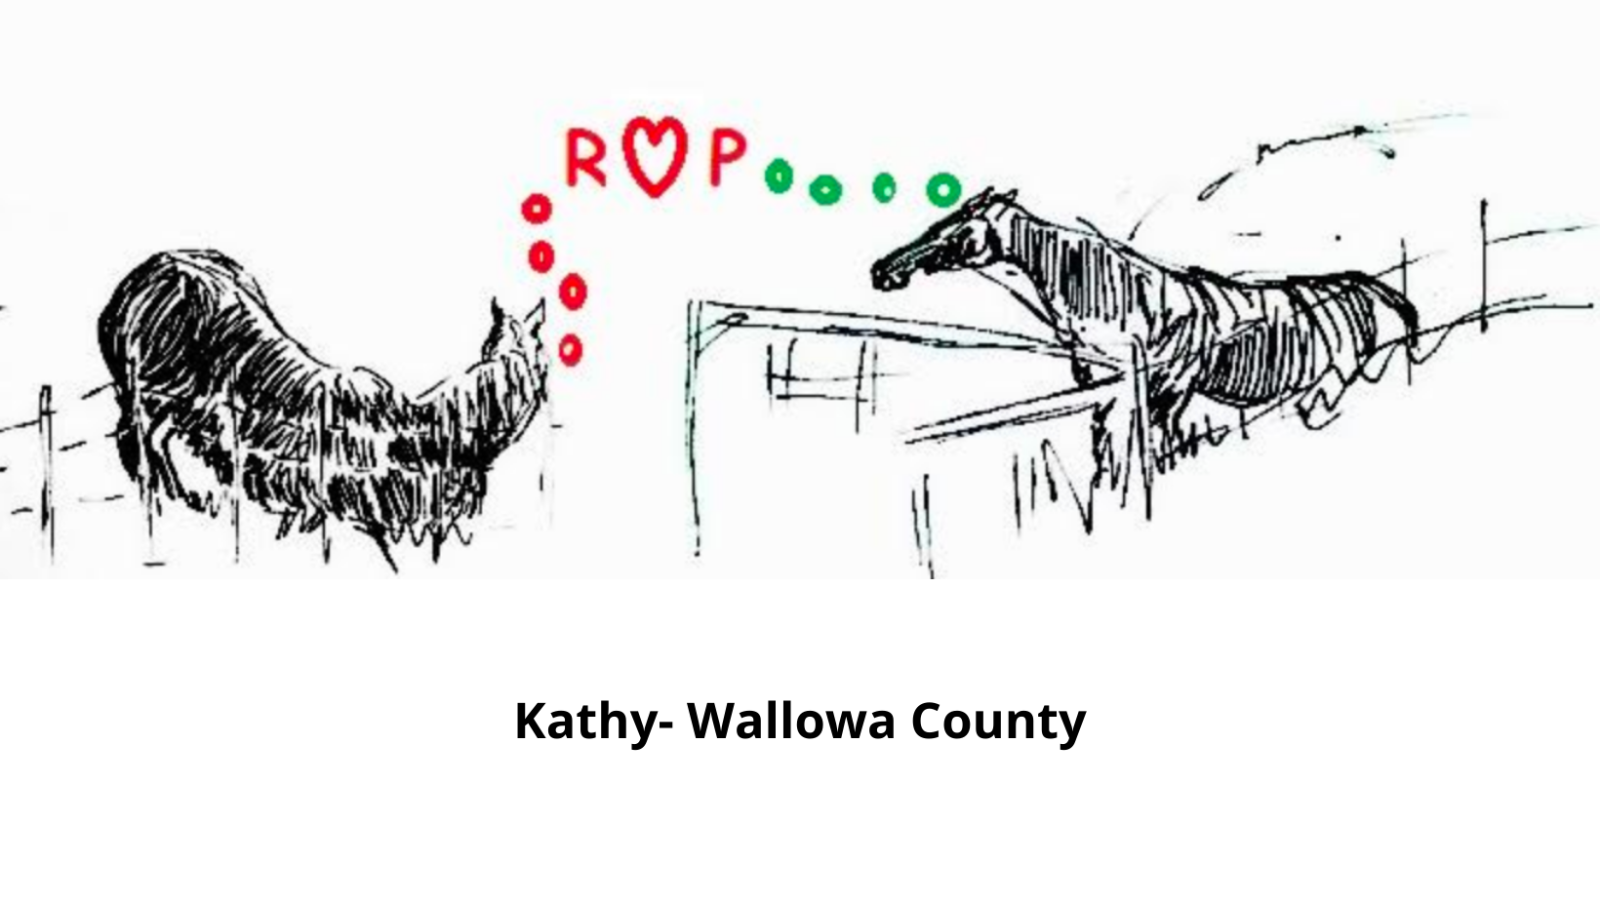 Un dibujo de dos caballos de Kathy en el condado de Wallowa, con las letras ROP, donde la "O" es una forma de corazón